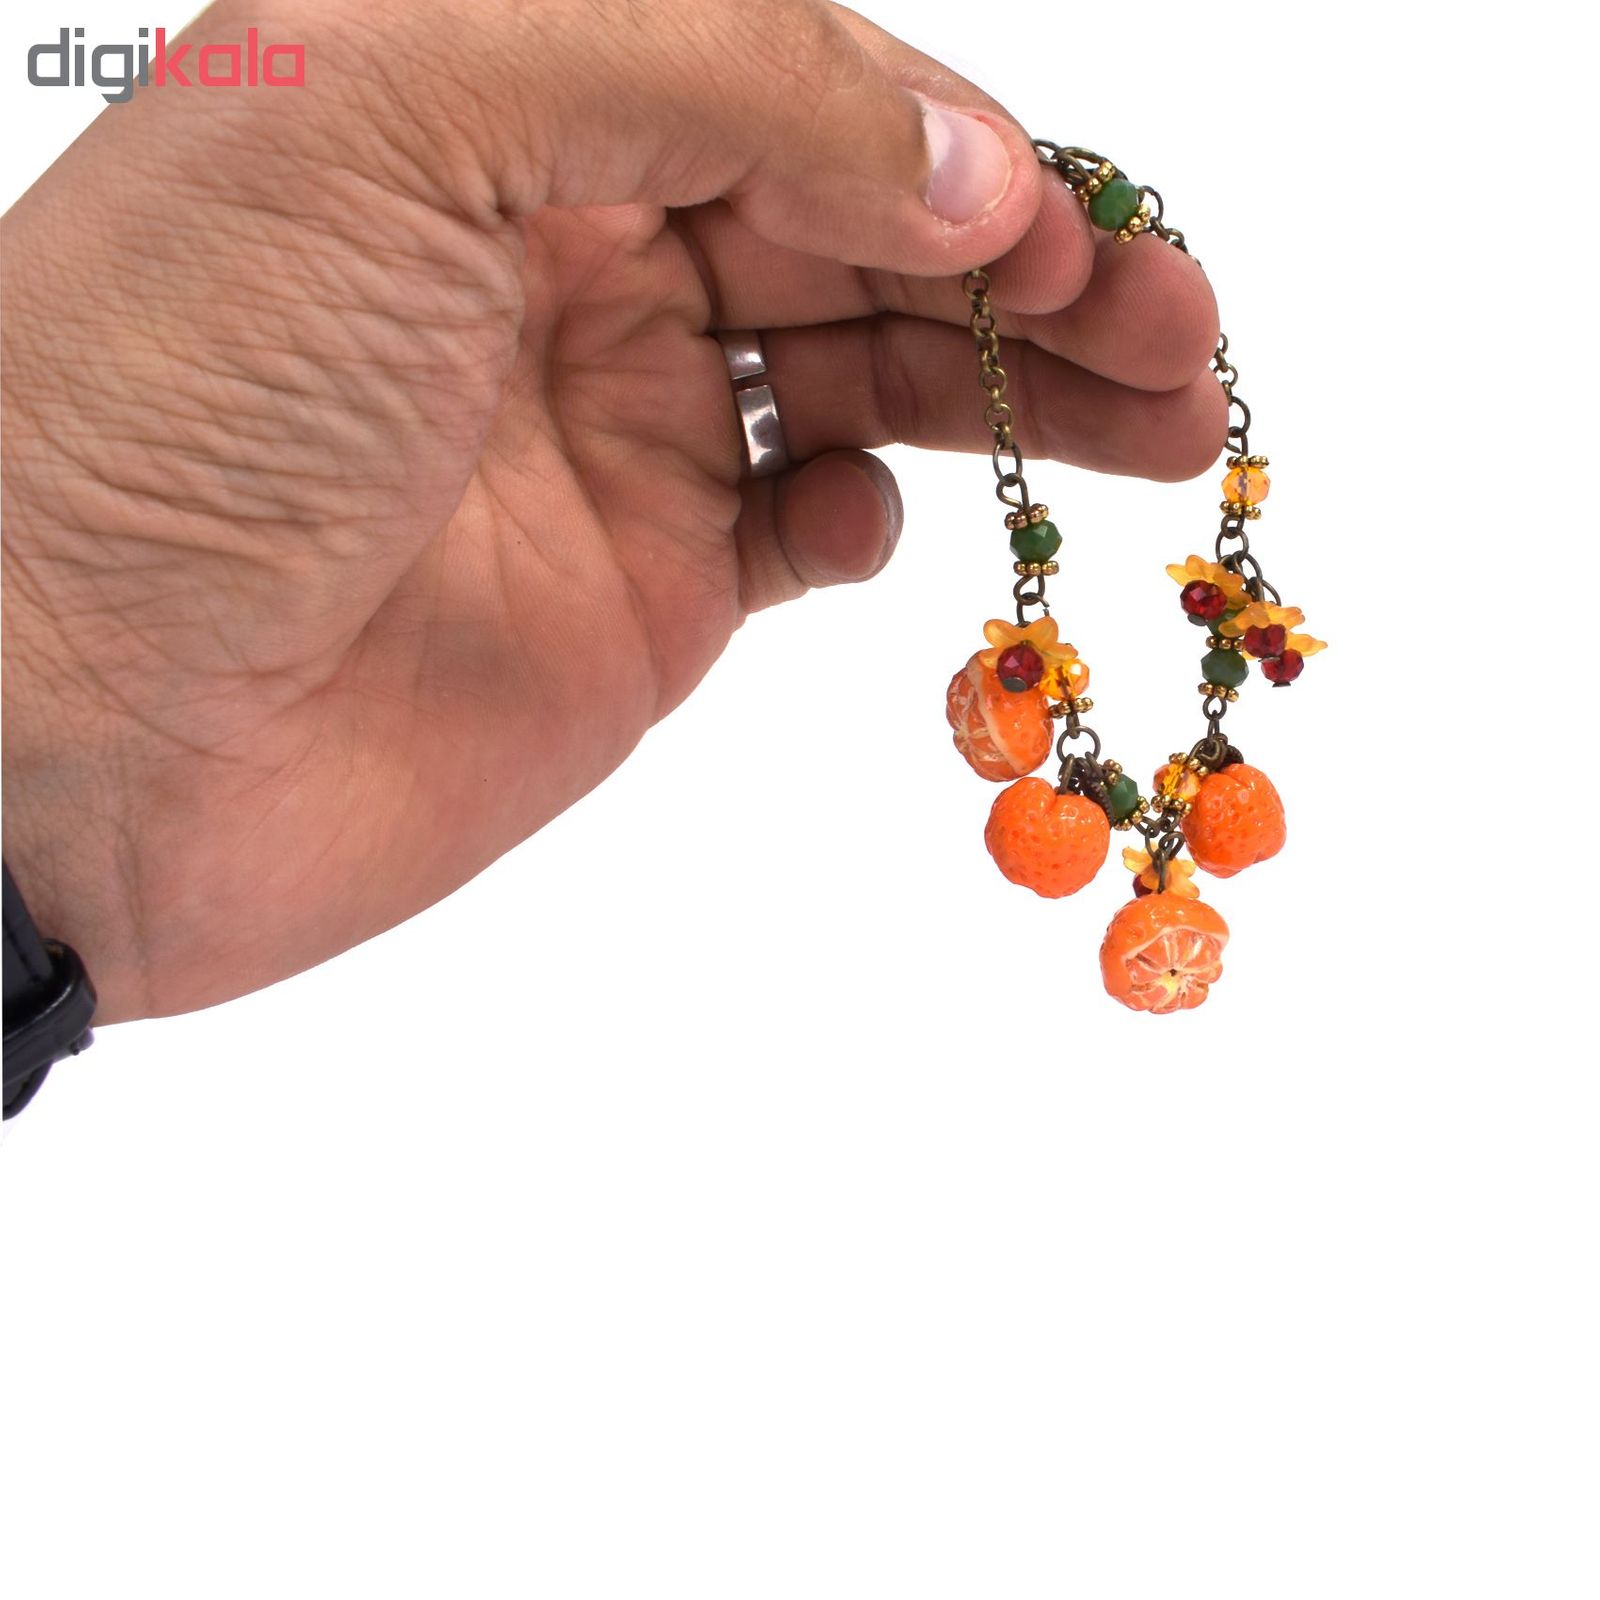 دستبند زنانه طرح نارنگی کد 08 -  - 3